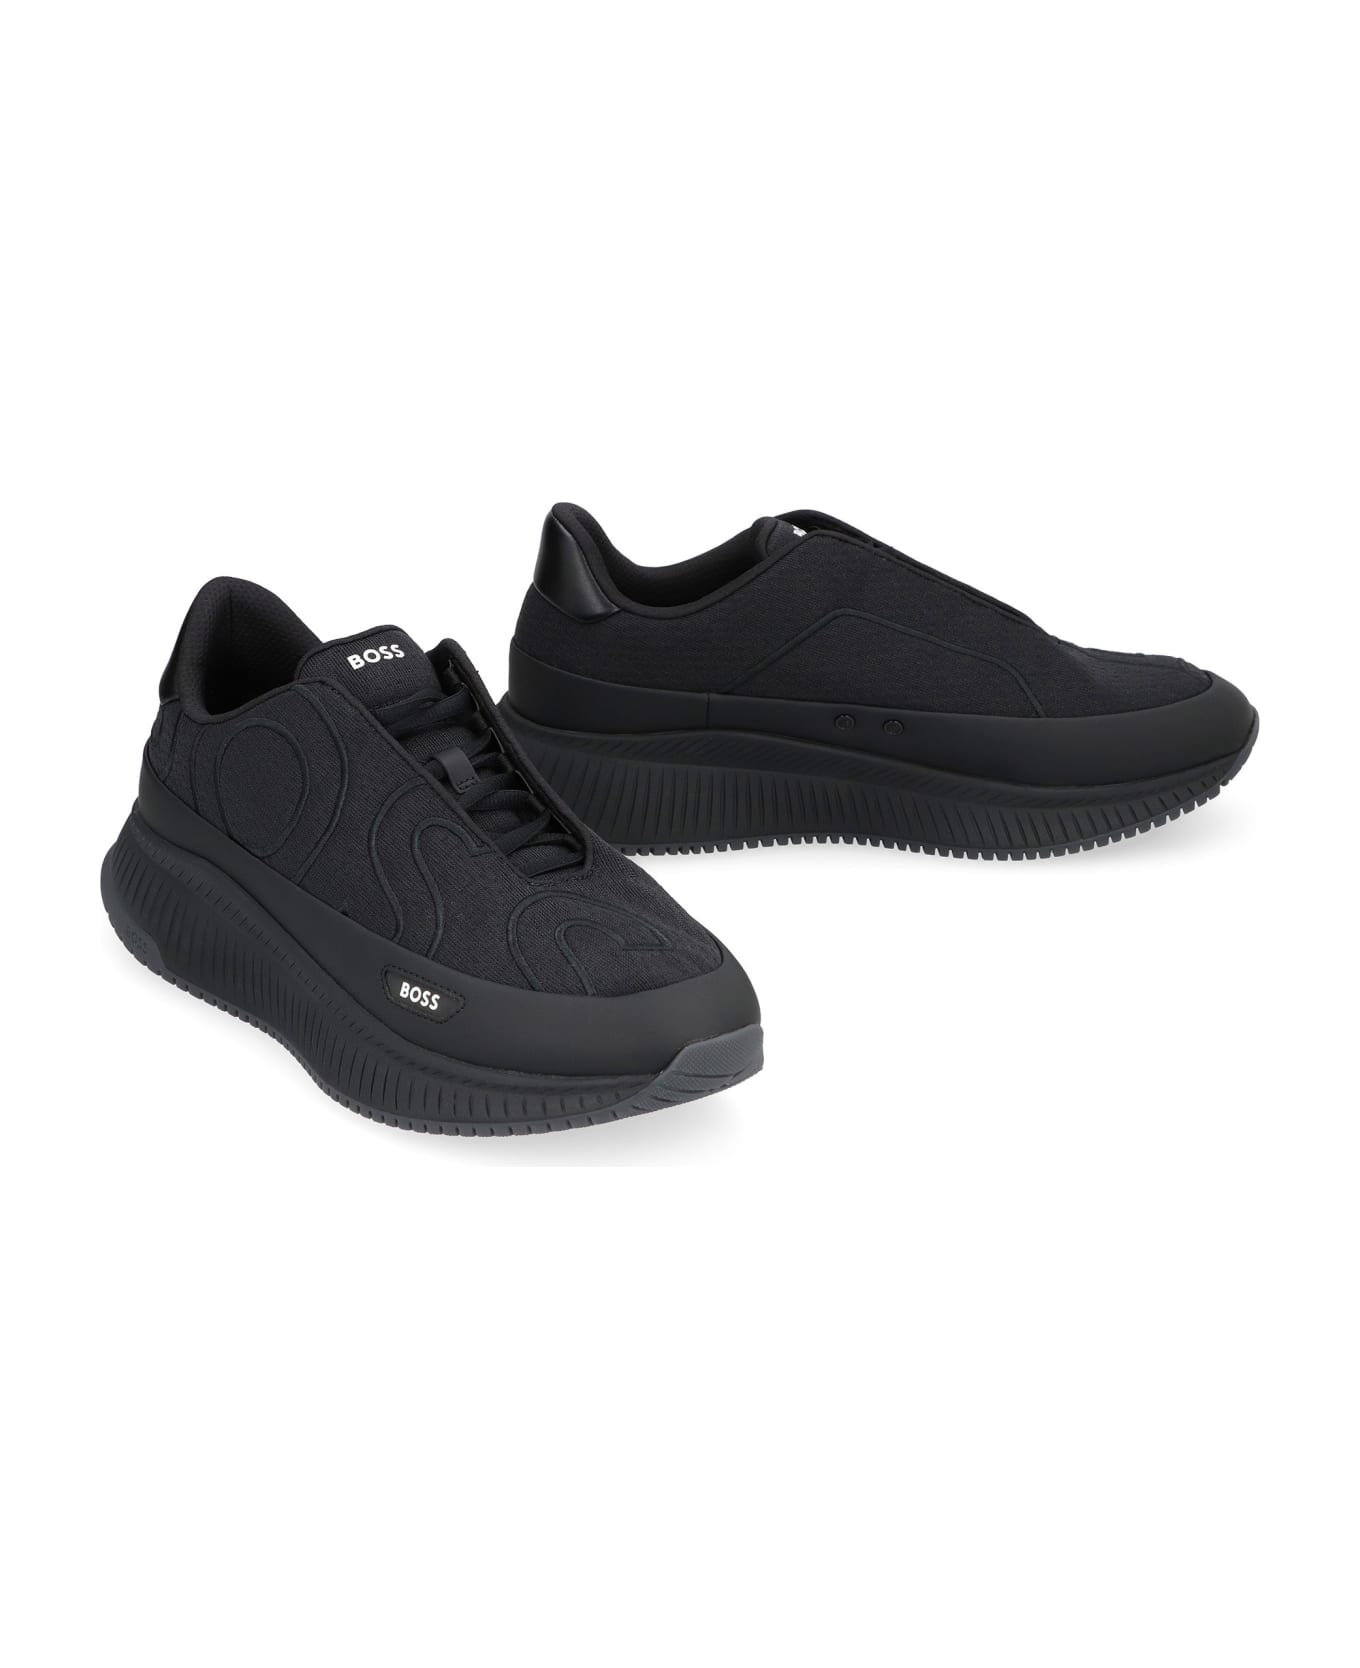 Hugo Boss Fabric Low-top Sneakers - black